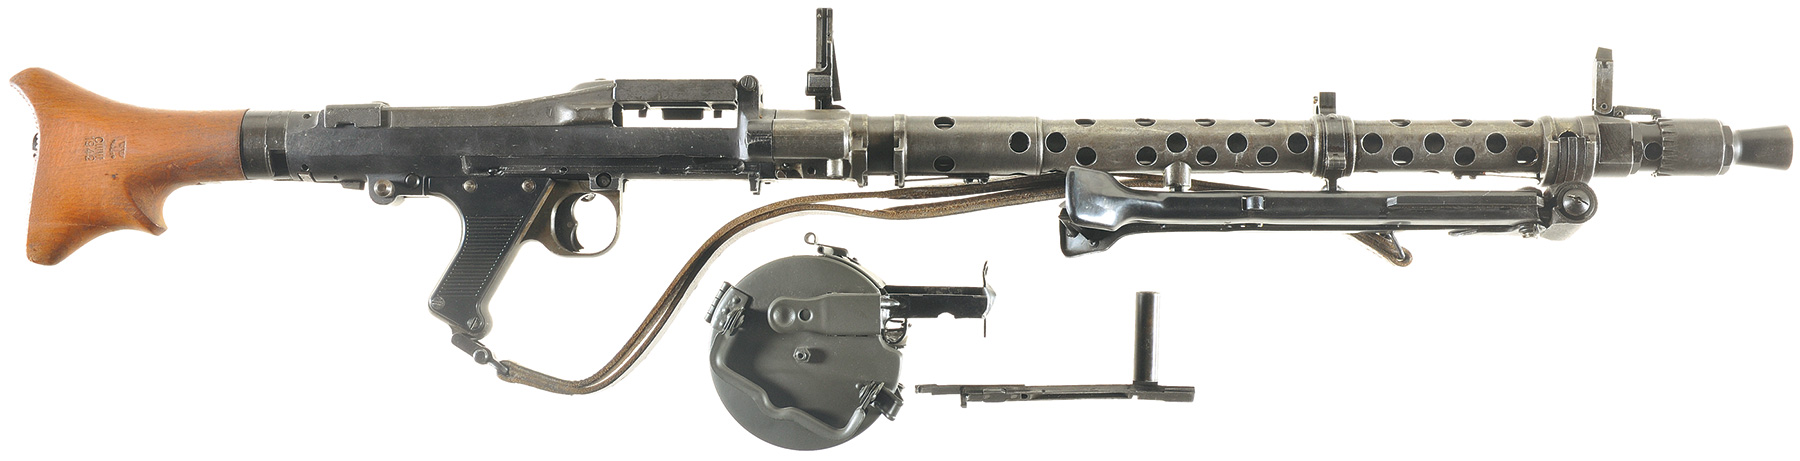 Немецкий пулемёт второй мировой войны MG 34 (нем. Maschinengewehr 34)